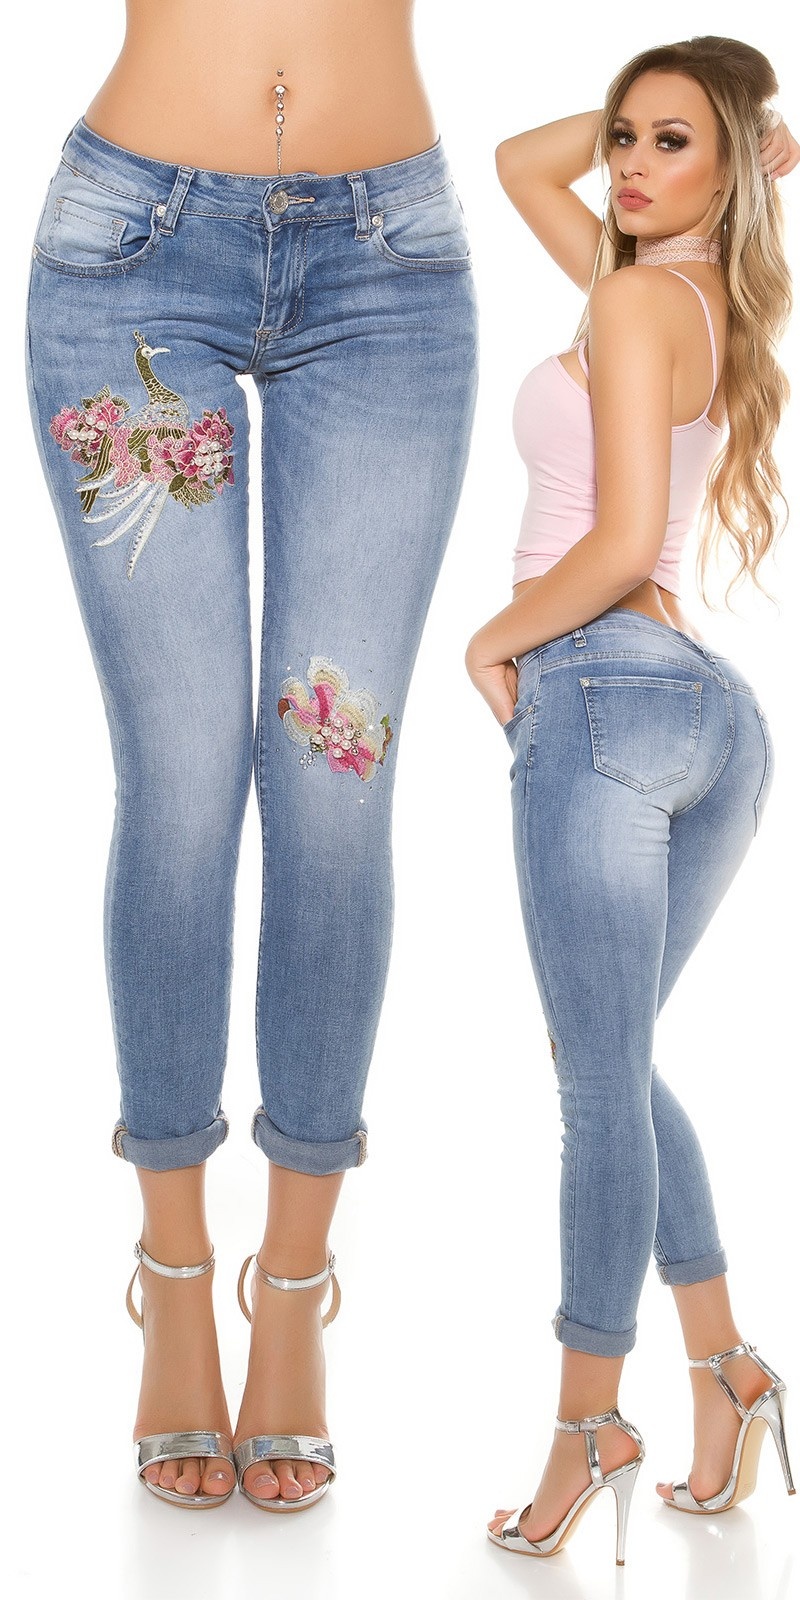 Sexy Ass Jeans afbeeldingen, beelden en stockfoto's - iStock ...